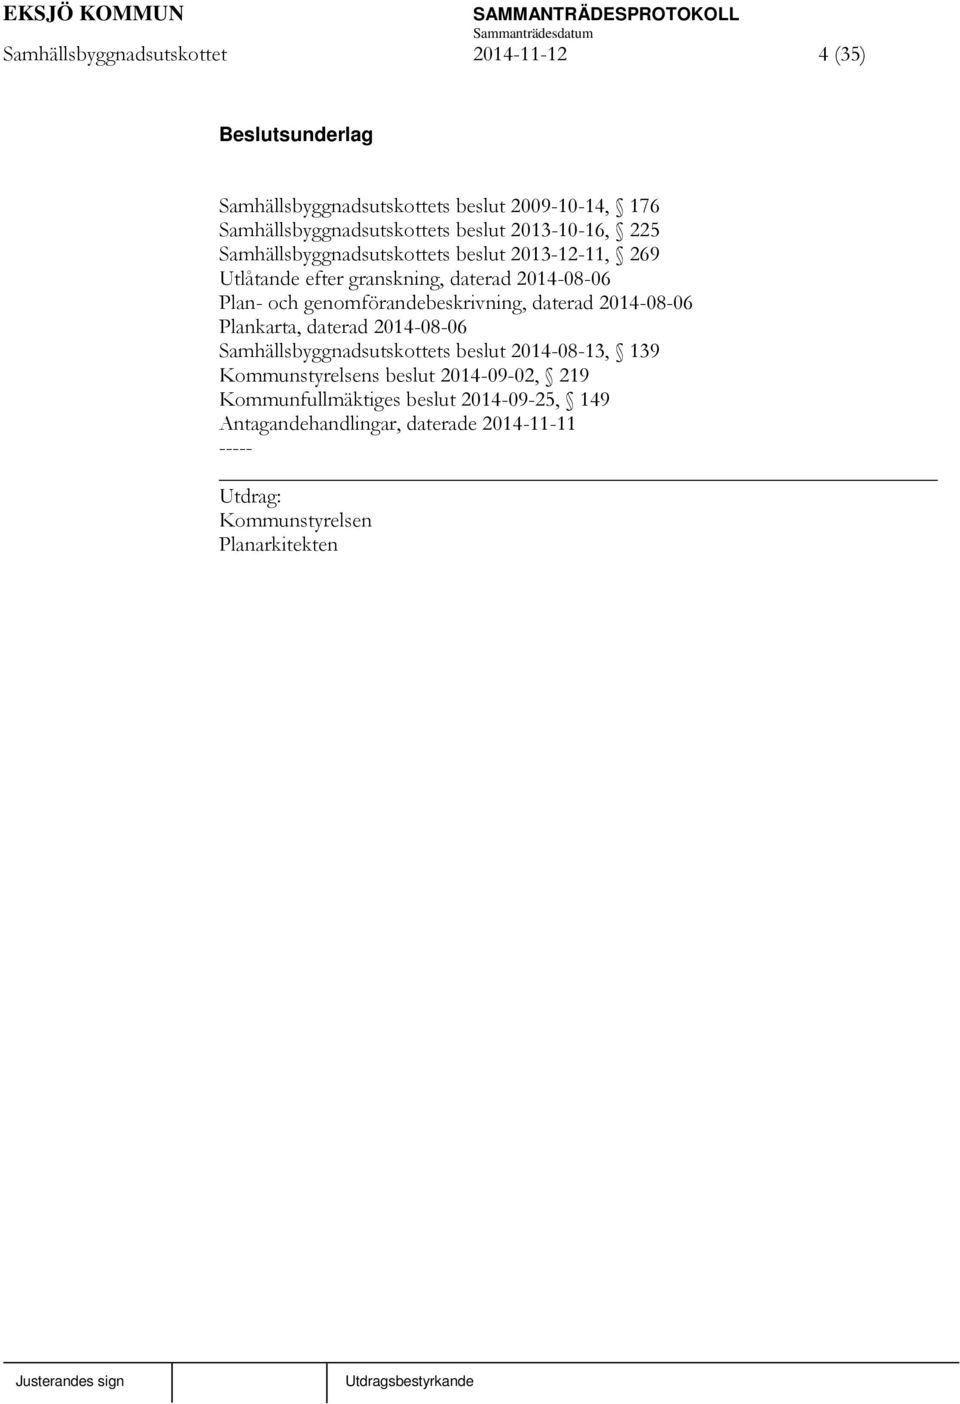 genomförandebeskrivning, daterad 2014-08-06 Plankarta, daterad 2014-08-06 Samhällsbyggnadsutskottets beslut 2014-08-13, 139